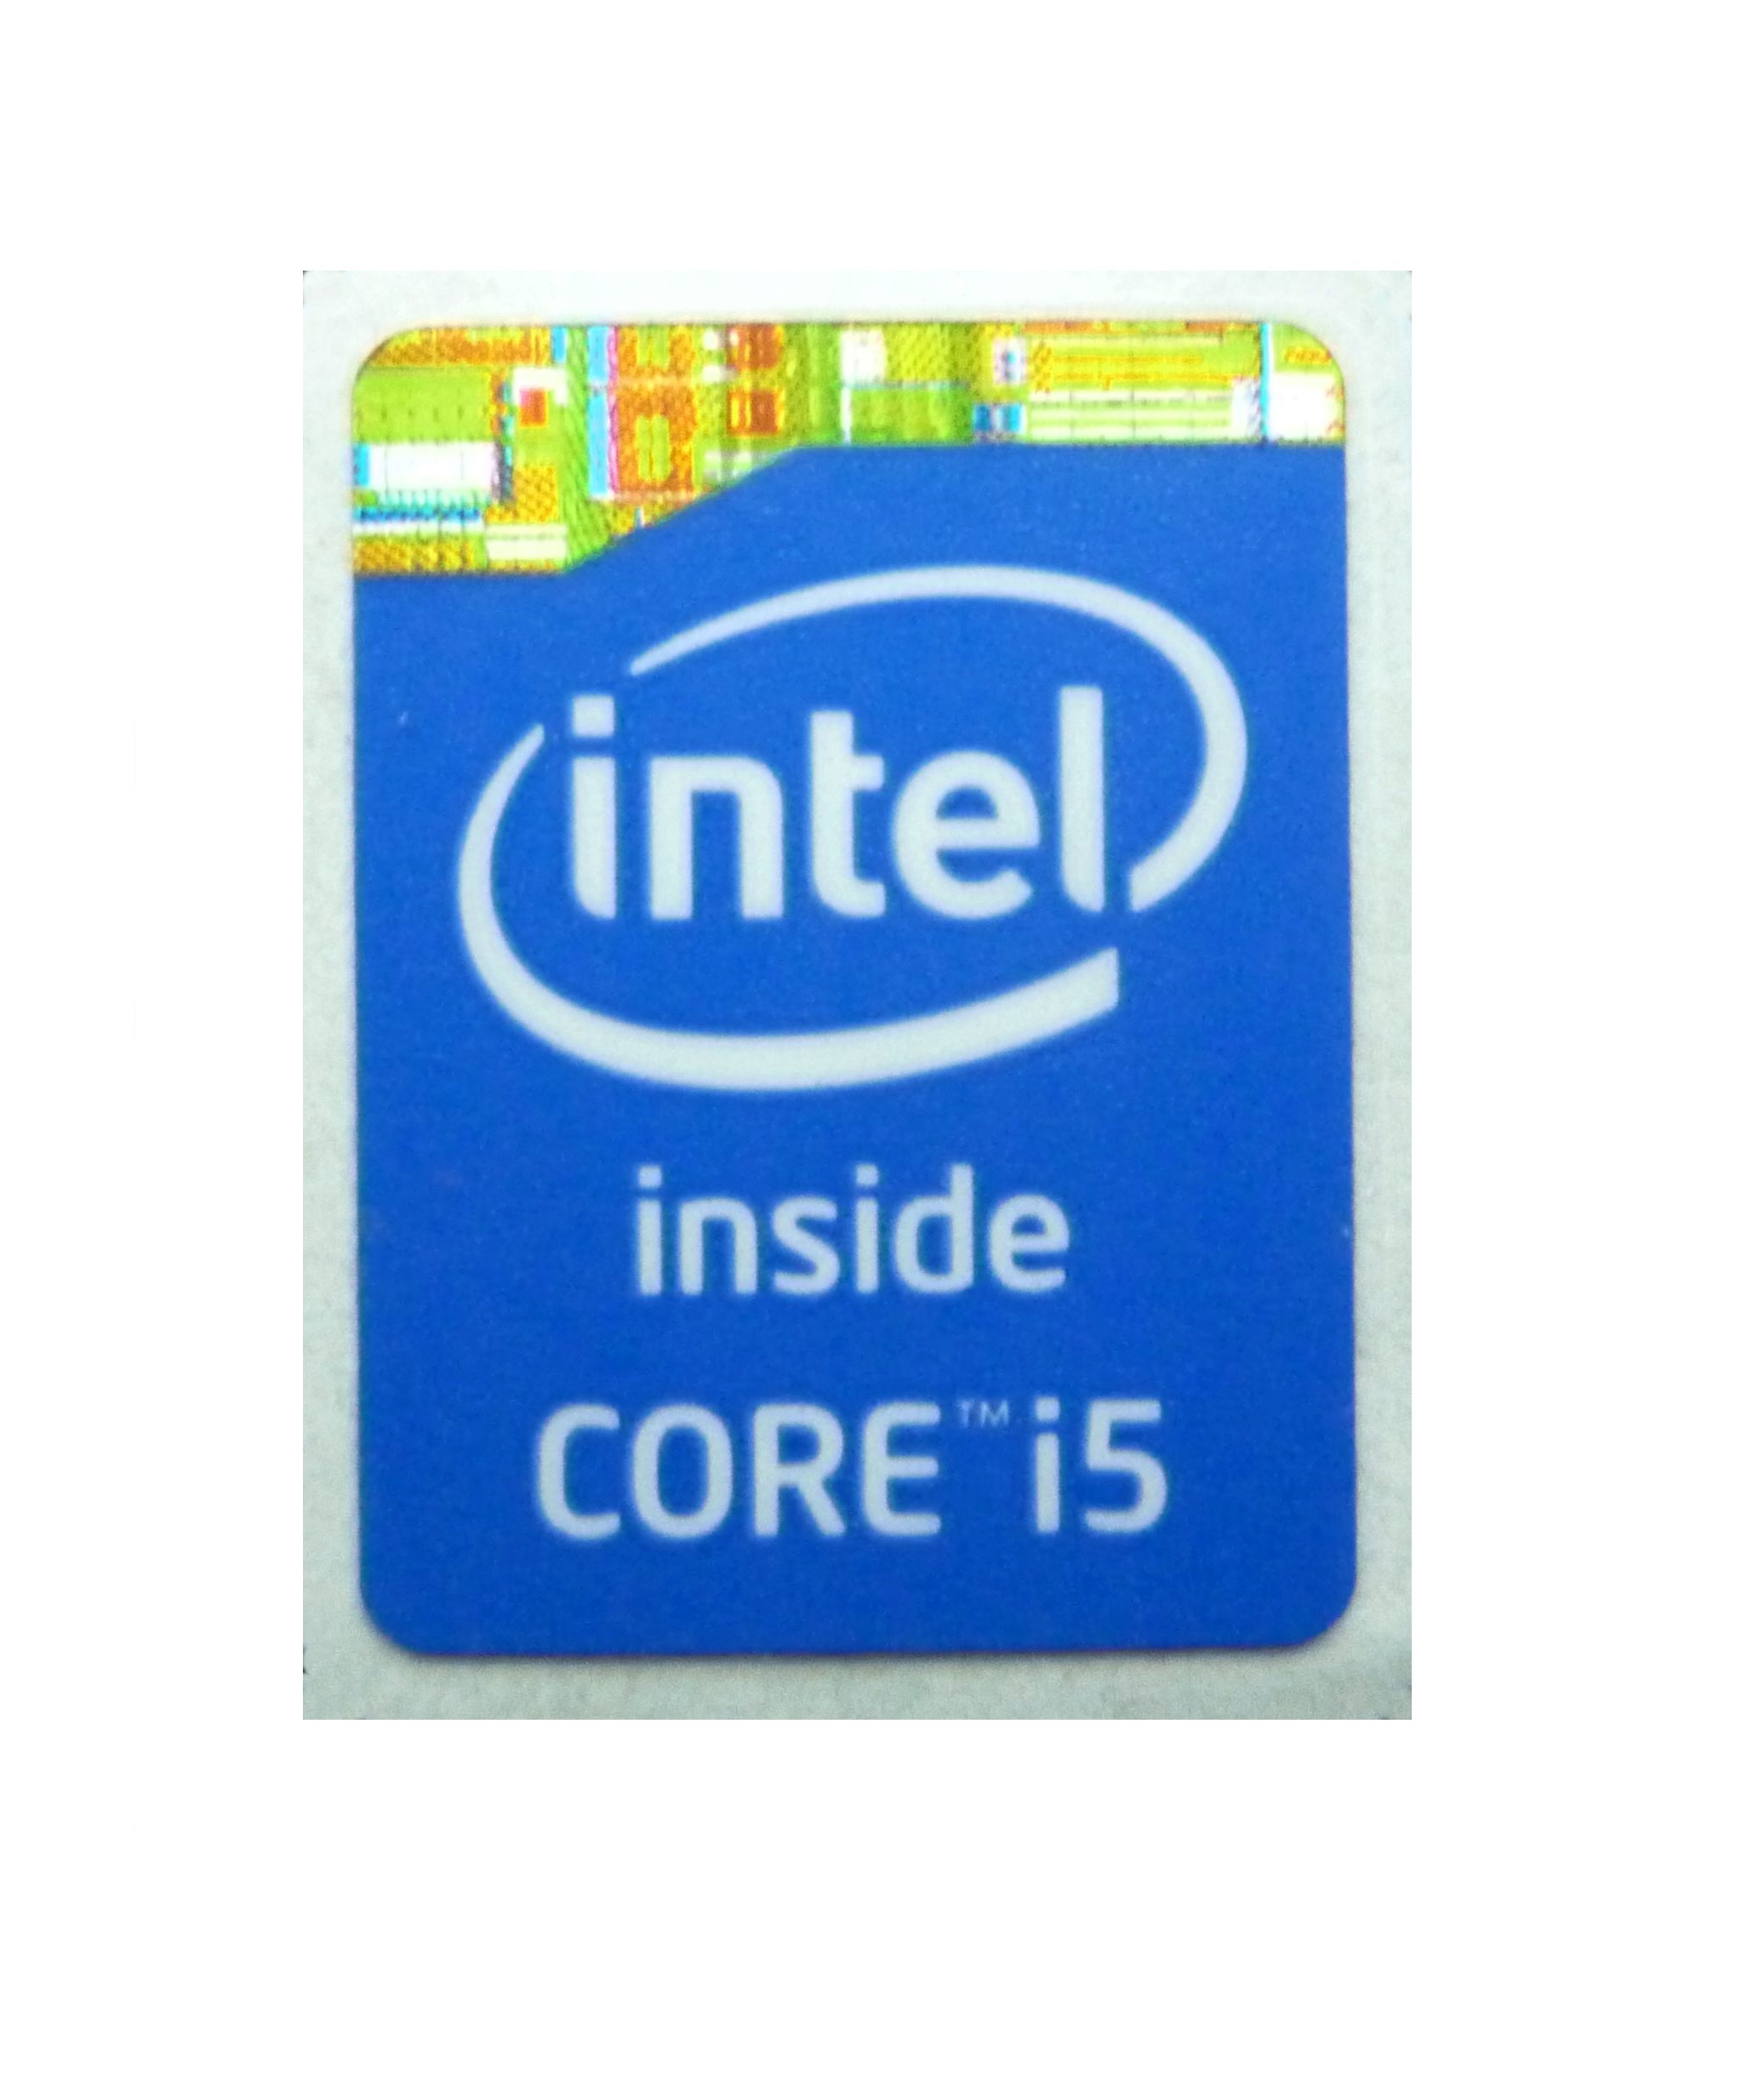 Наклейки intel. Наклейка Intel Core i7 inside. Intel Pentium 3 Xeon inside наклейка. Intel Core i5 inside наклейка. Процессор Intel Core i3 inside.